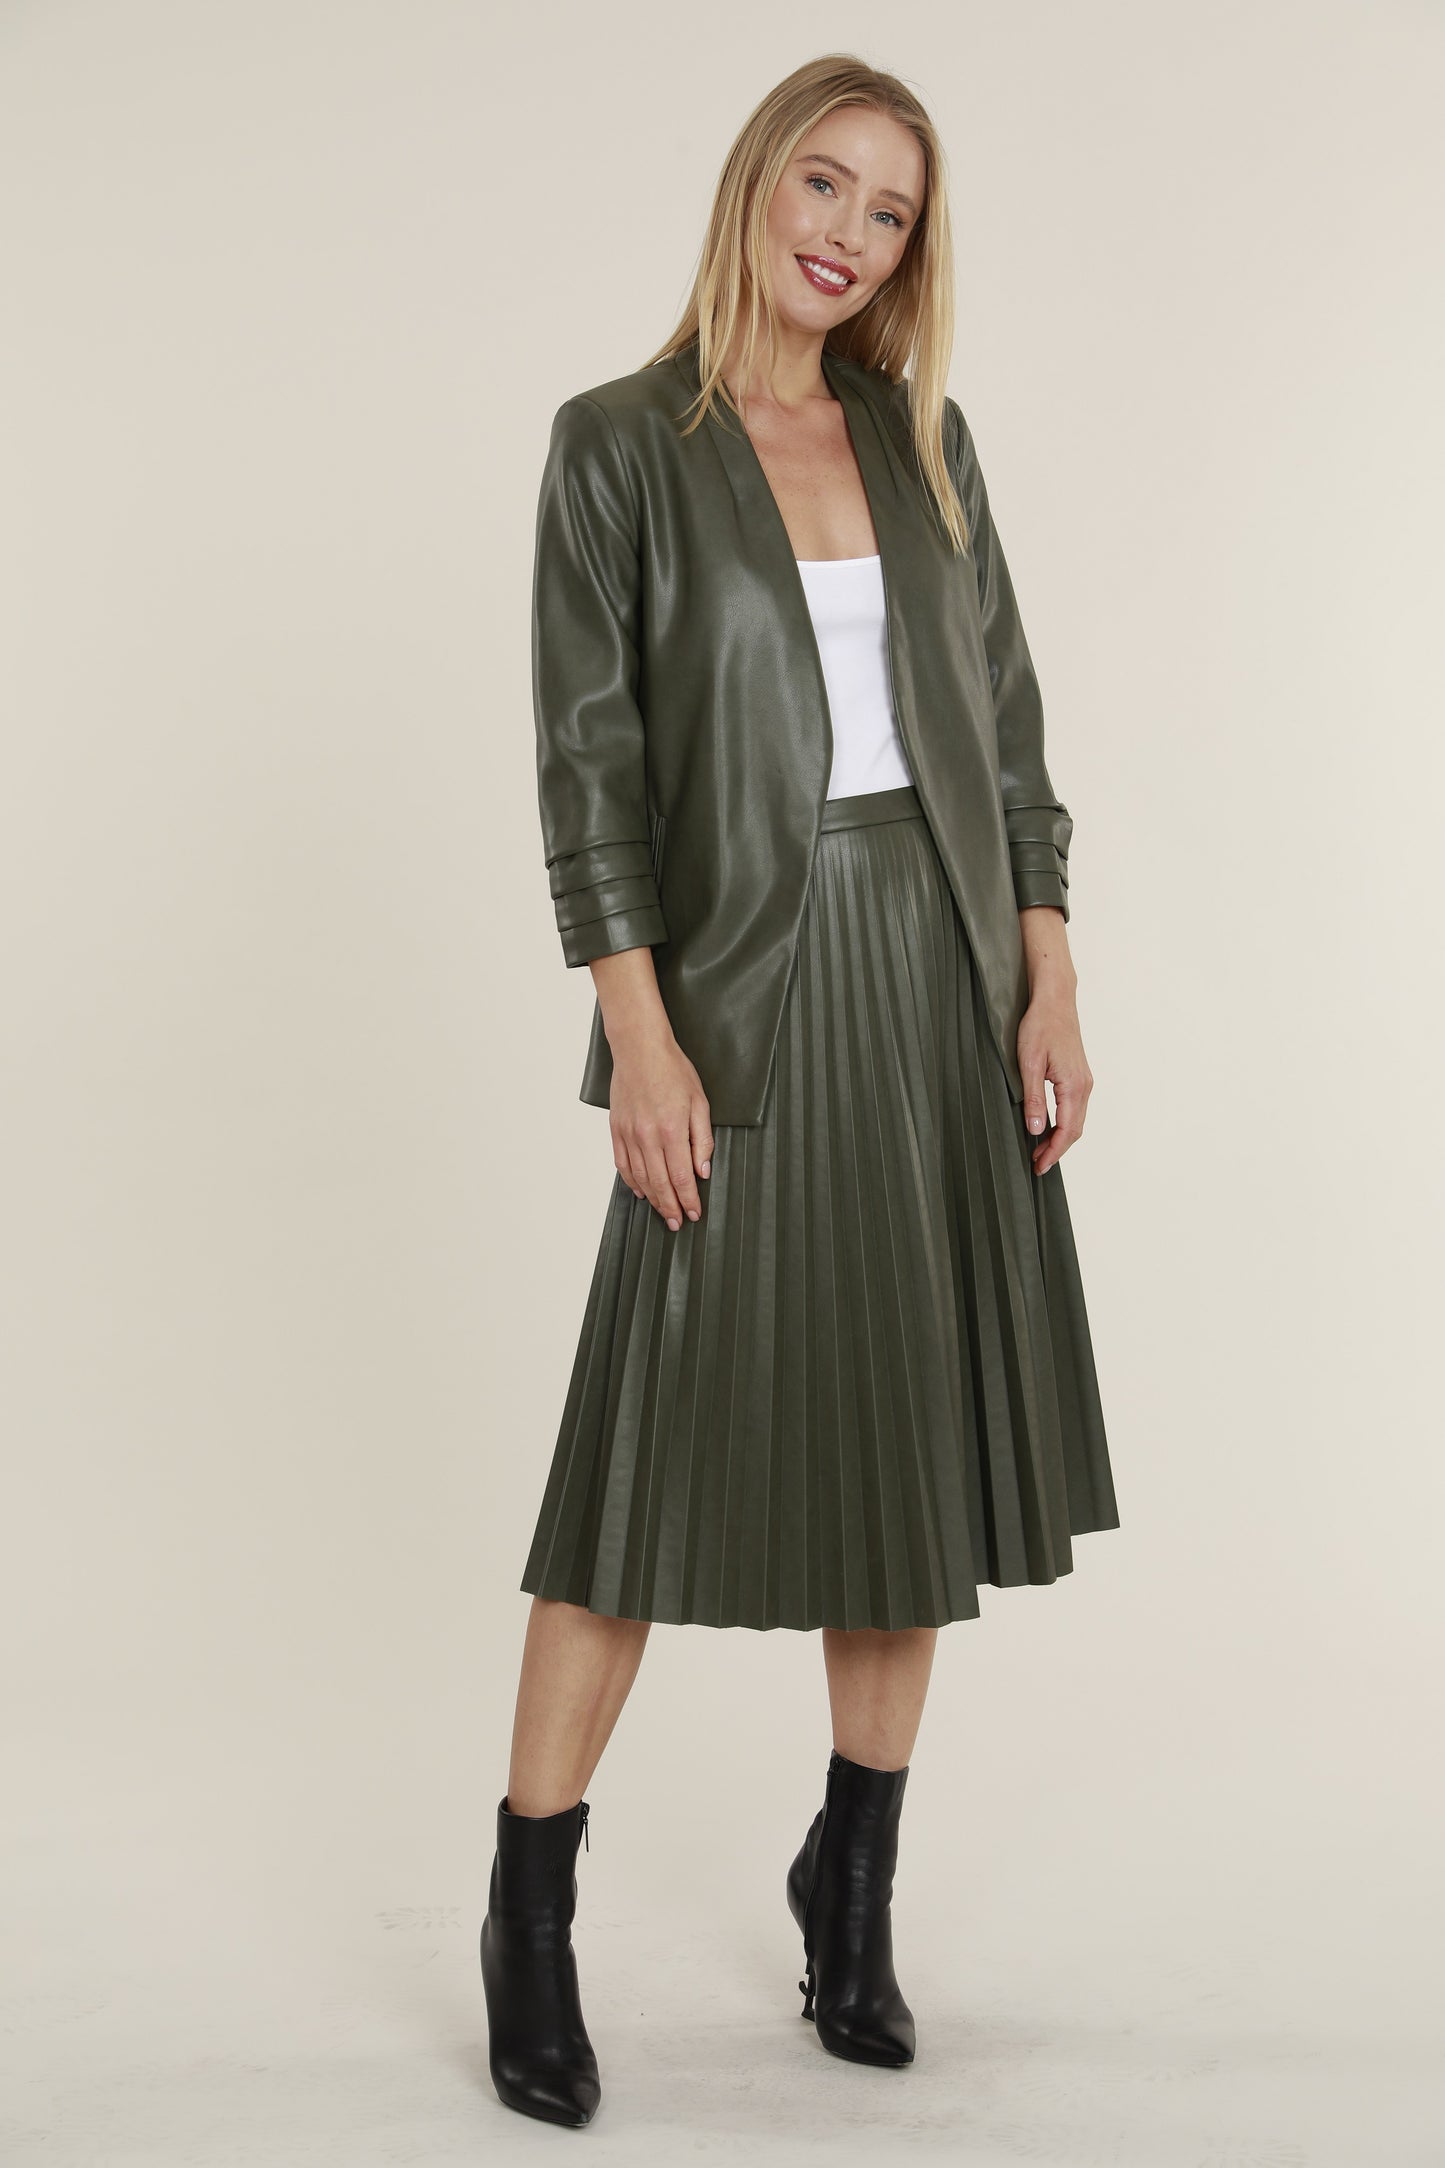 Vegan Leather Pleated Skirt